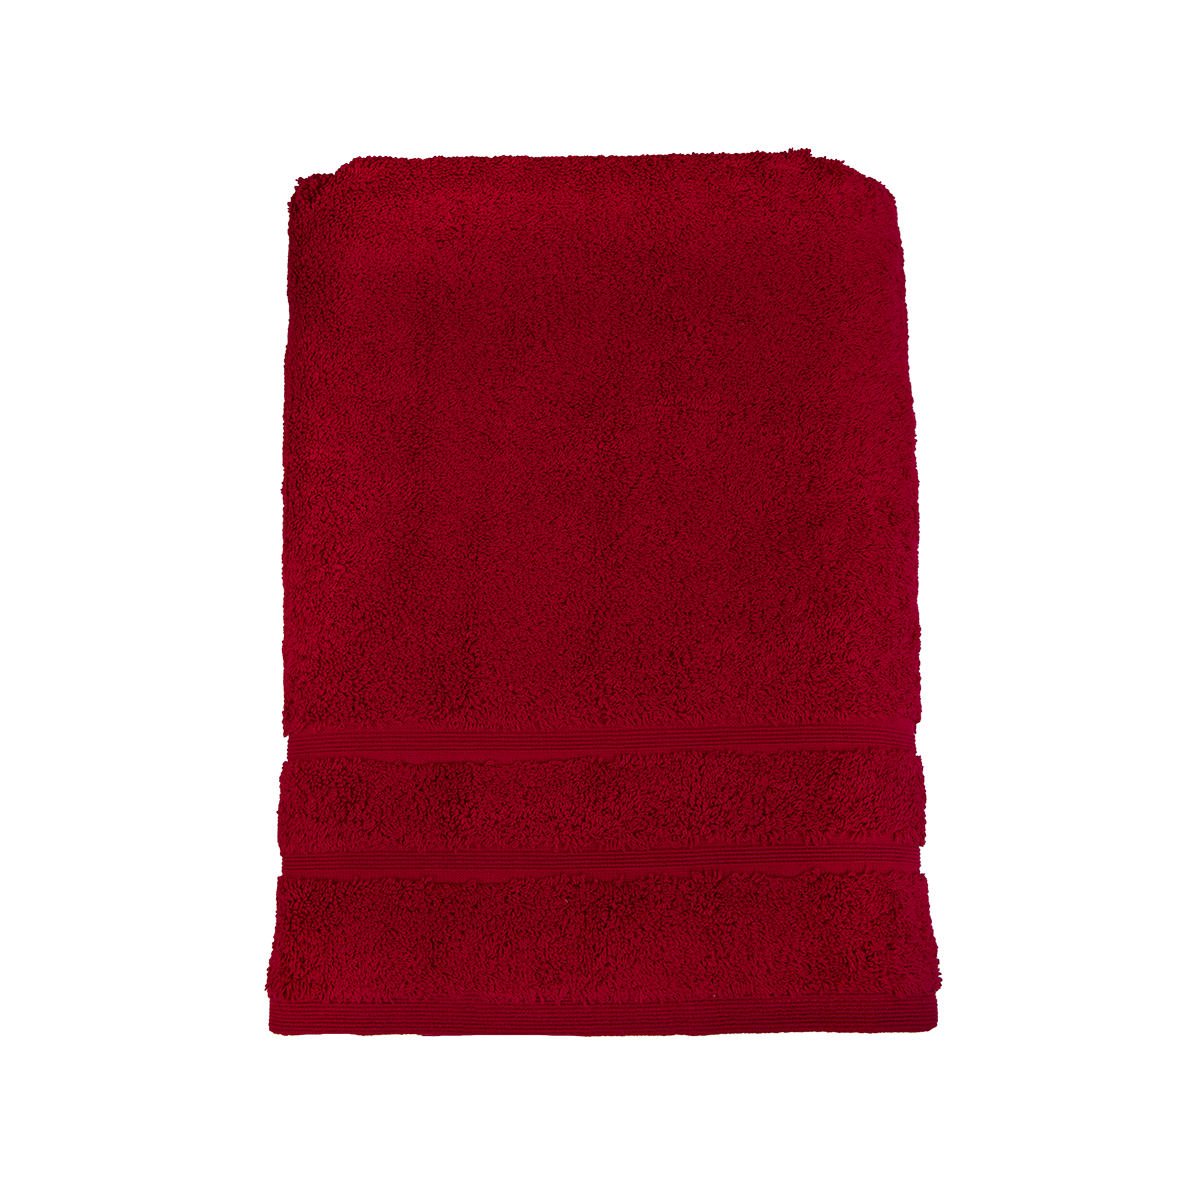 Bio Baumwoll Dusch- und Badetuch, in den Größen 70 mal 140 cm und 100 mal 140 cm in der Farbe Bordeaux (dunkles Rot)